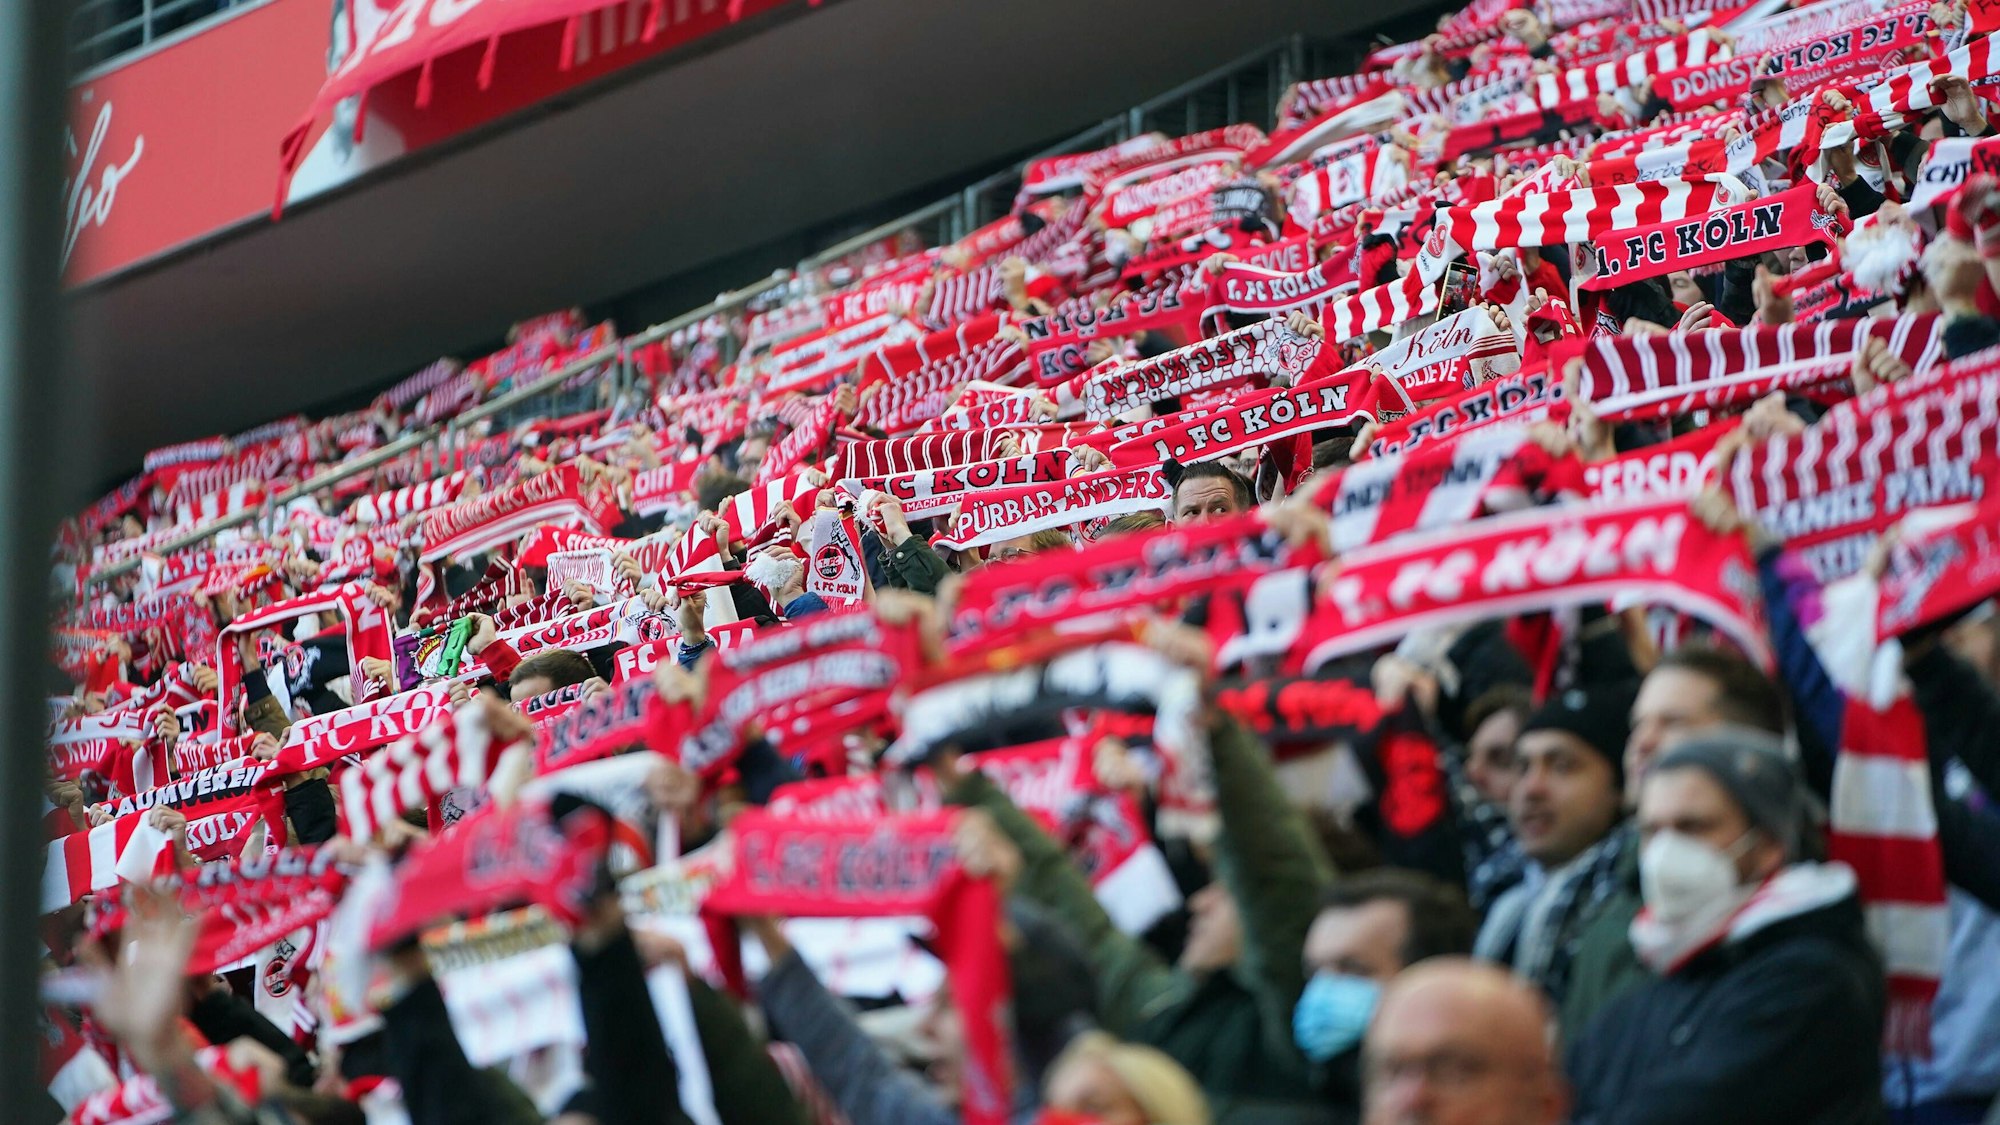 Fans des 1. FC Köln beim Spiel gegen Borussia Mönchengladbach